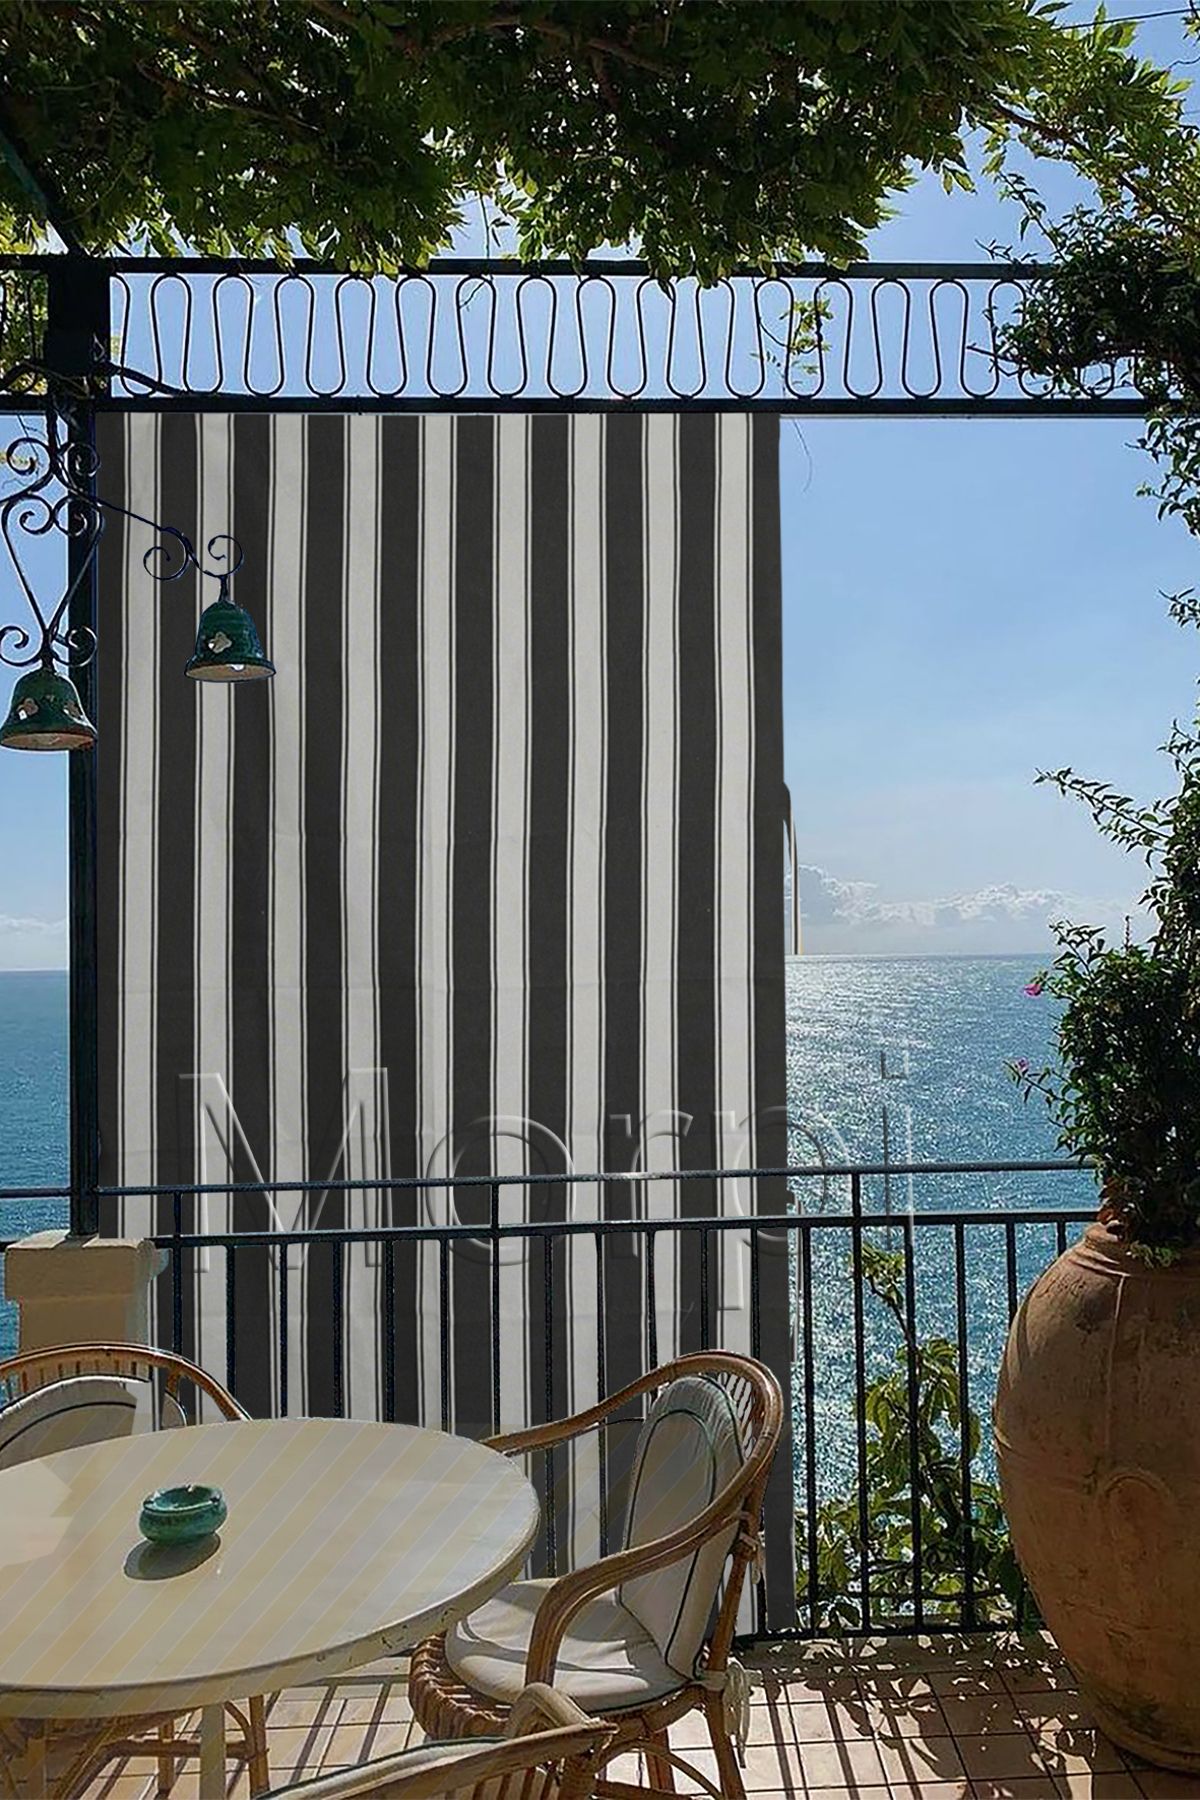 morpi Her Ölçüde ( En X Yükseklik) Seçenekli Bağcıklı Balkon Perdesi Branda Güneşlik Gri-beyaz